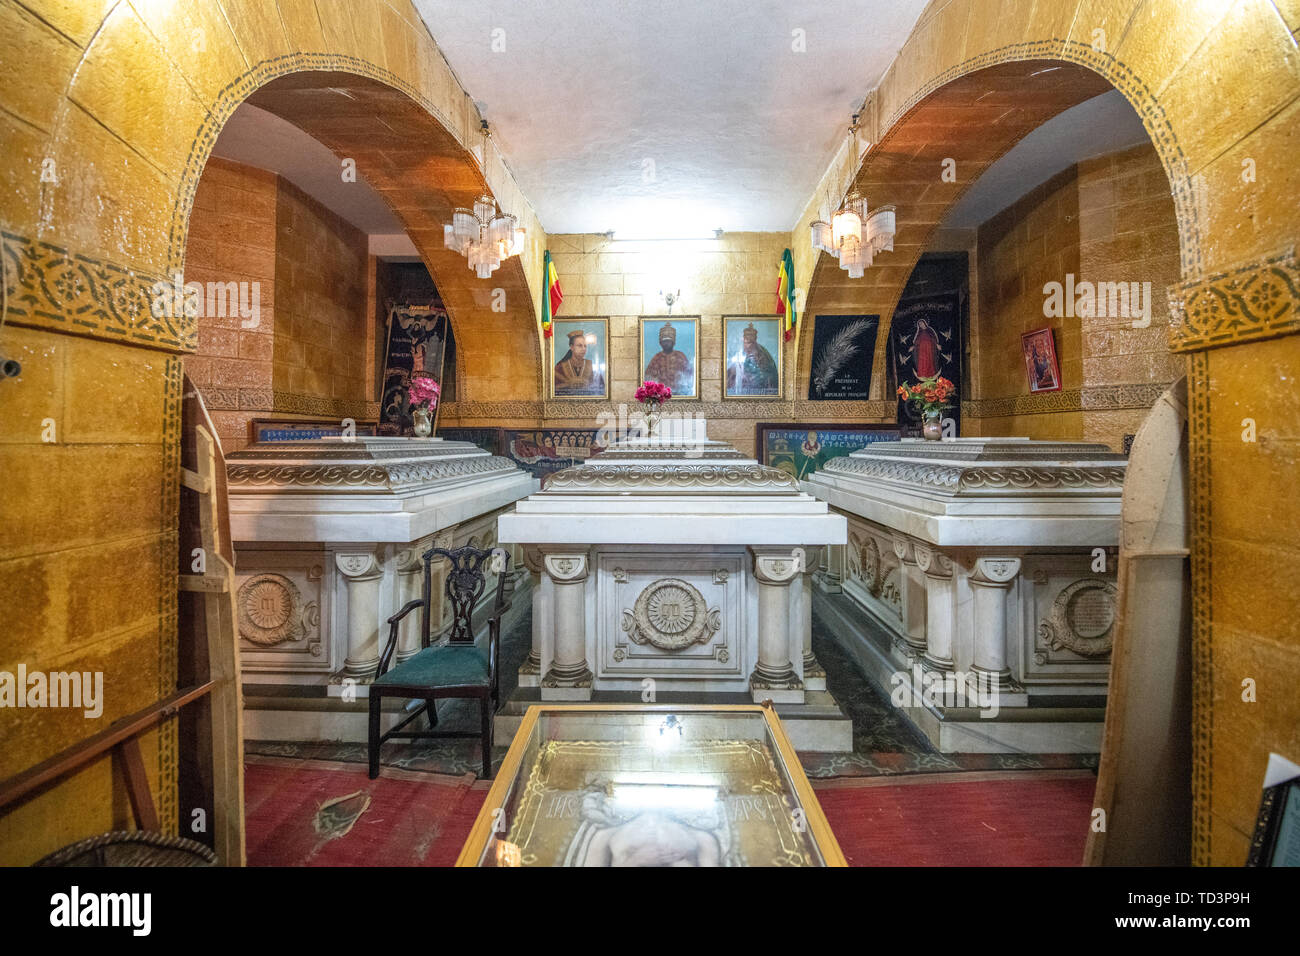 Die königlichen Gräber und Artefakte innerhalb der Beata Maryam Kirche, Ruhestätte von Menelik II. und seiner Frau und seiner Tochter. Addis Abeba, Äthiopien. Stockfoto